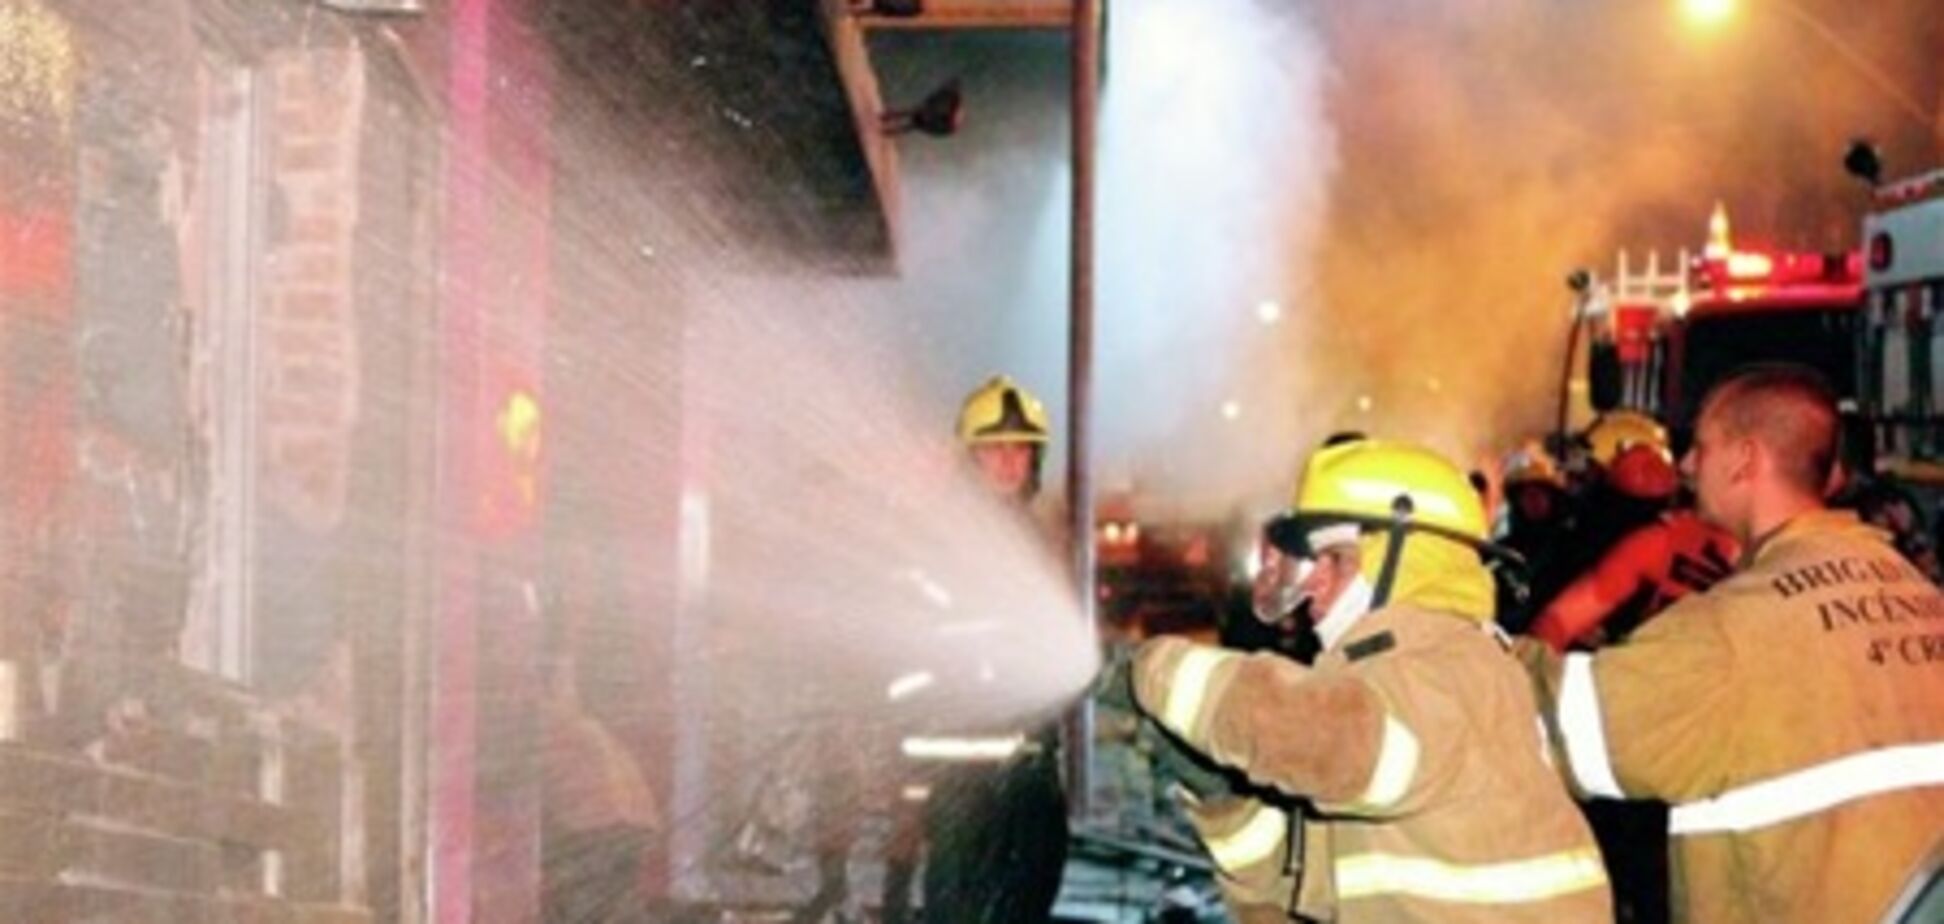 Охрана горевшего в Бразилии клуба не выпускала посетителей - свидетели